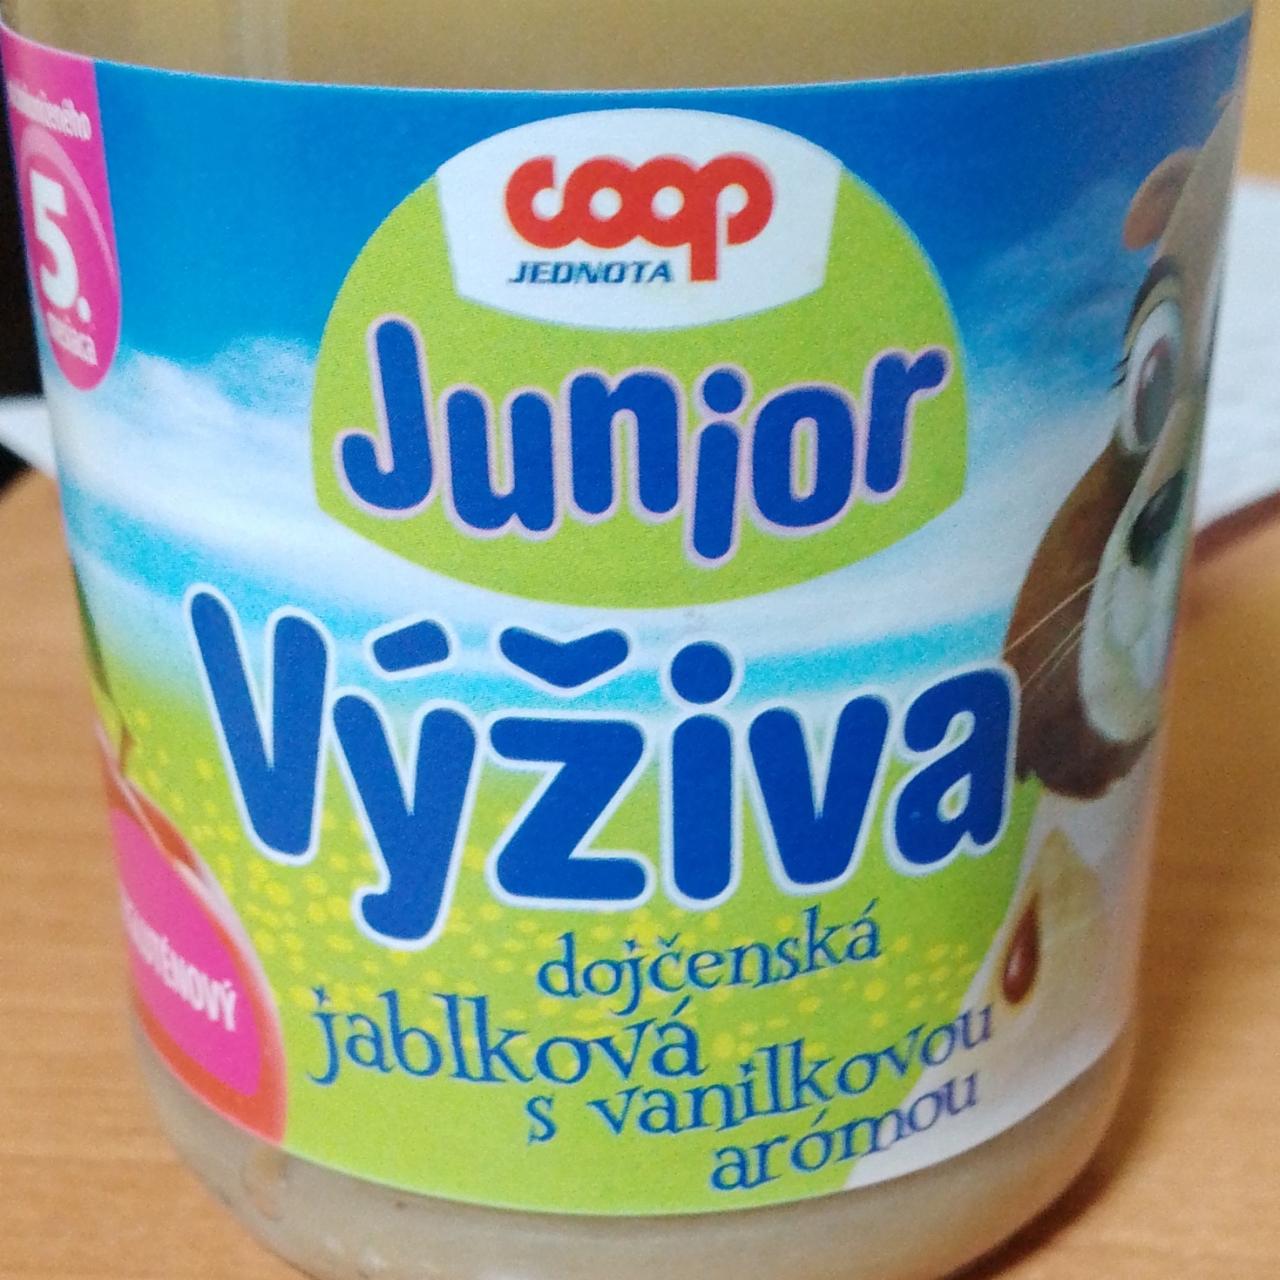 Fotografie - Junior Výživa dojčenská jablková s vanilkovou arómou Coop Jednota